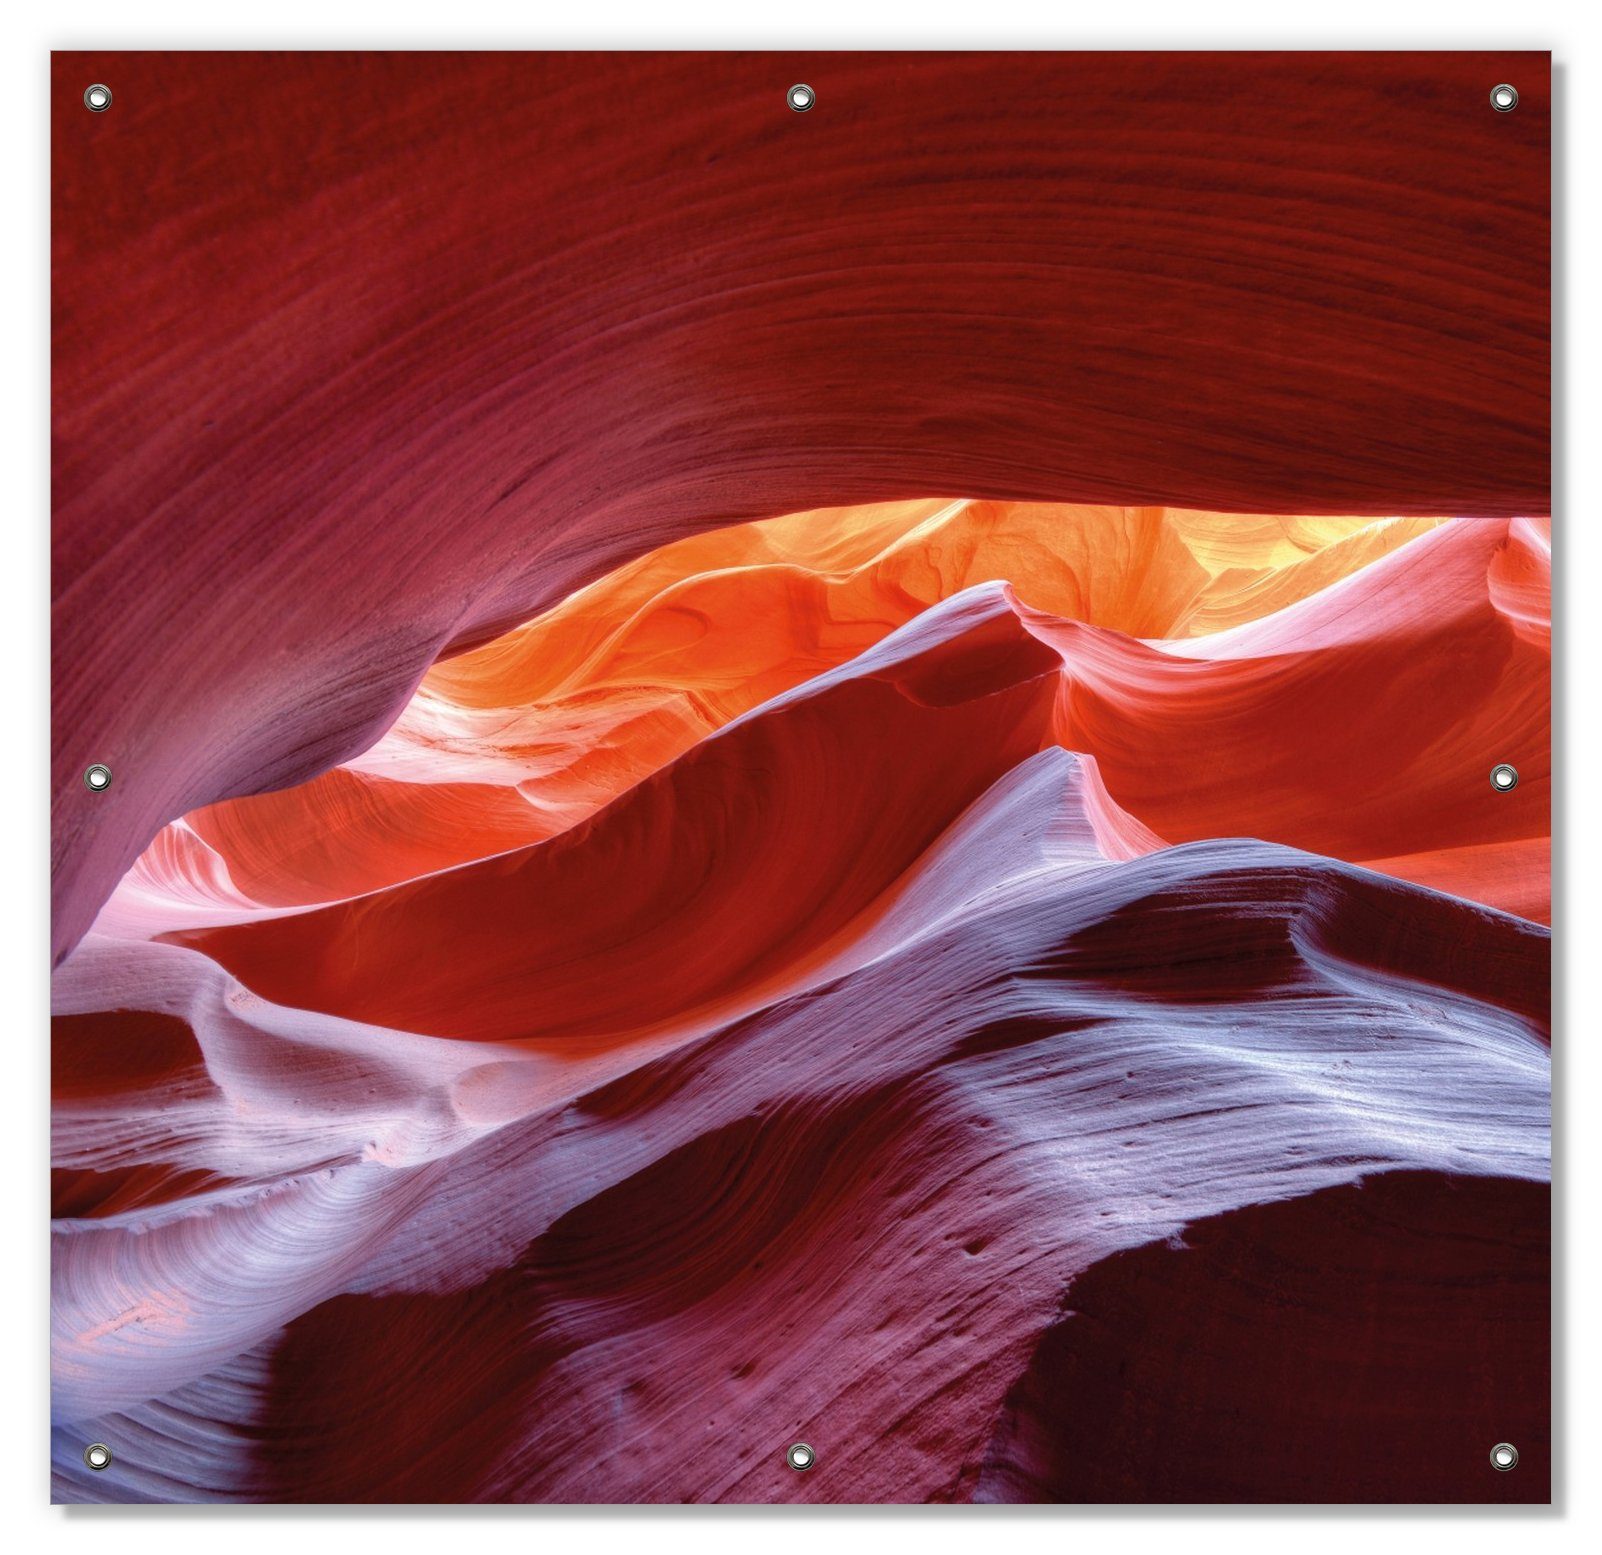 Sonnenschutz Antelop Canyon USA Kalksandsteingebirge mit wiederverwendbar blickdicht, in Farben, wiederablösbar Saugnäpfen, leuchtenden und Wallario